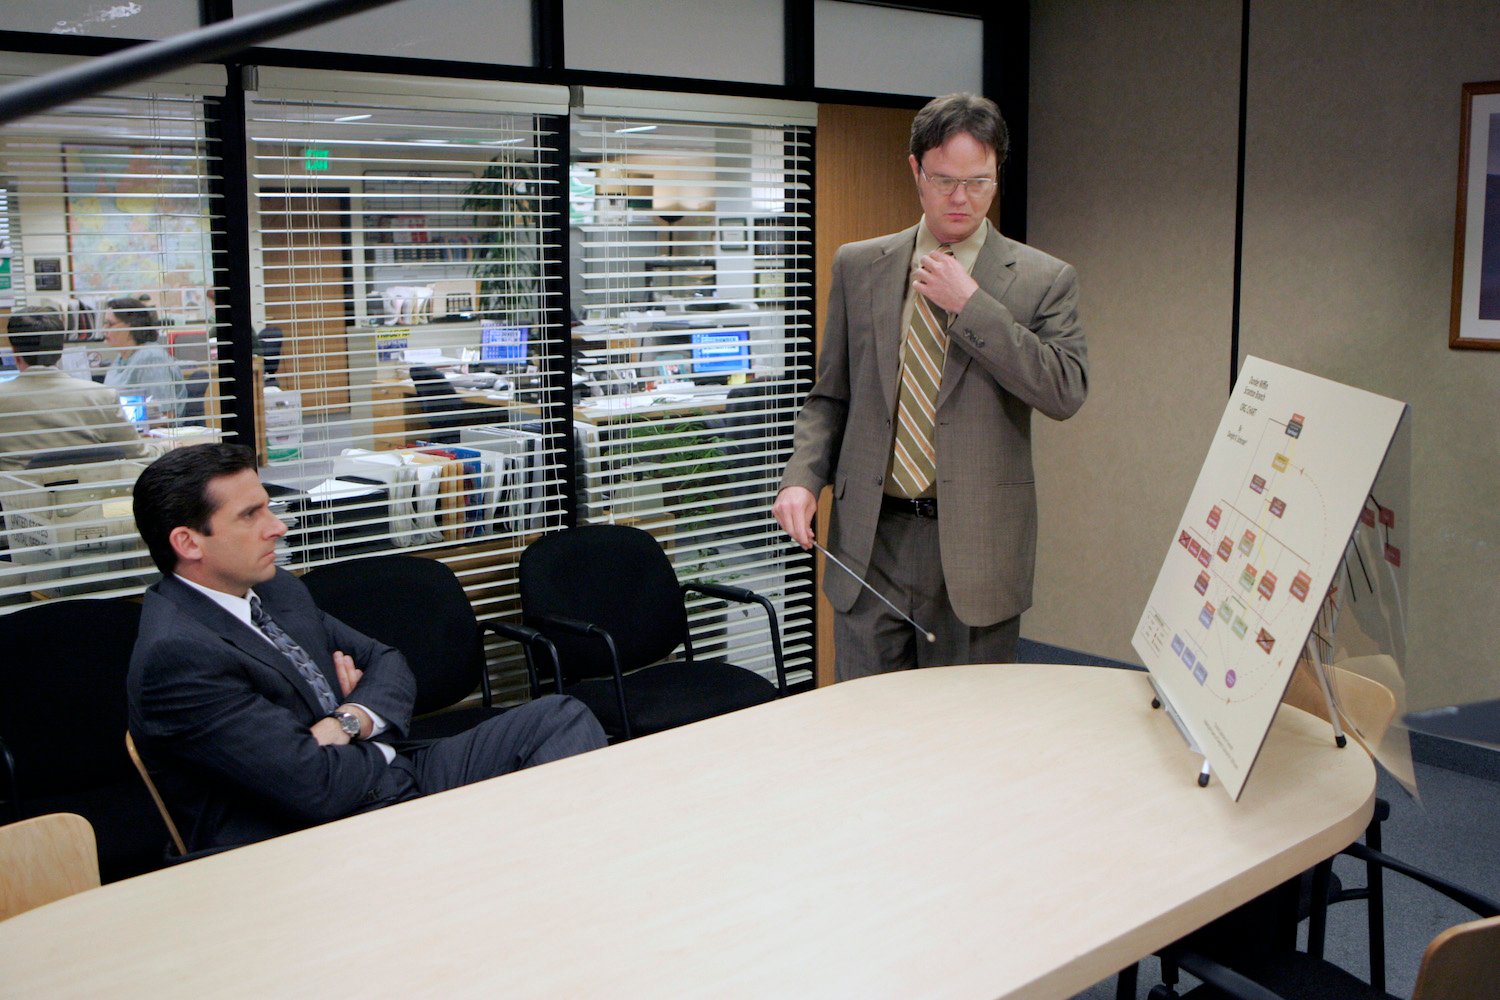 'The Office': Steve Carell as Michael Scott and Rainn Wilson as Dwight Schrute